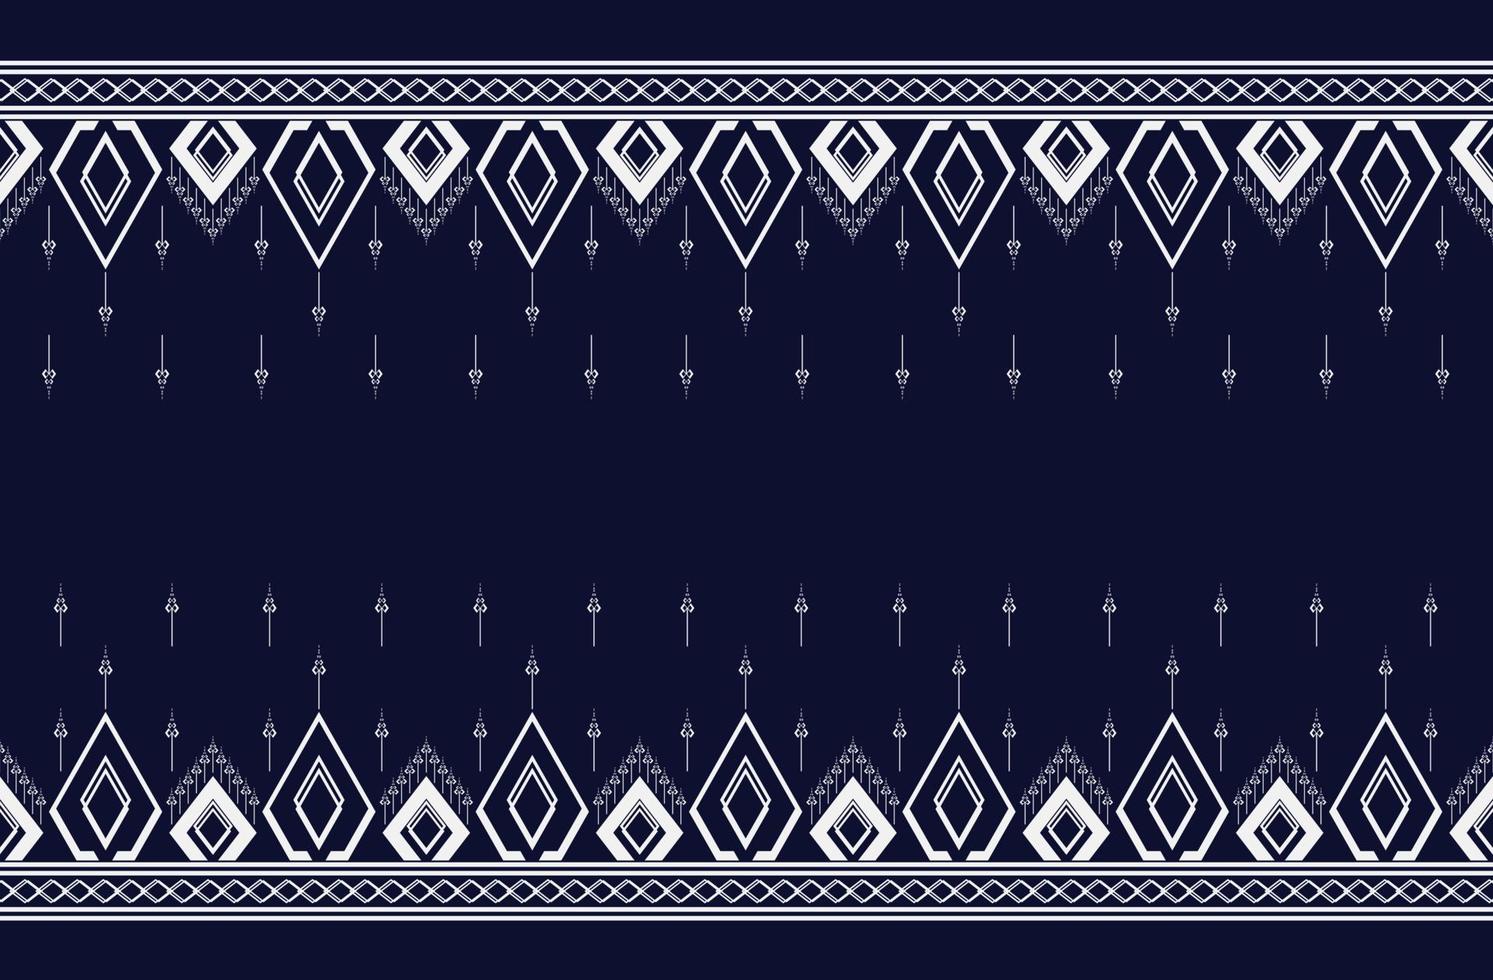 geometrische etnische textuur en patroonborduurwerk met donkerblauwe achtergrondontwerp voor mode,behang,rok,tapijt,behang,kleding,inwikkeling,batik,stof,vel, vectorillustratiestijl vector